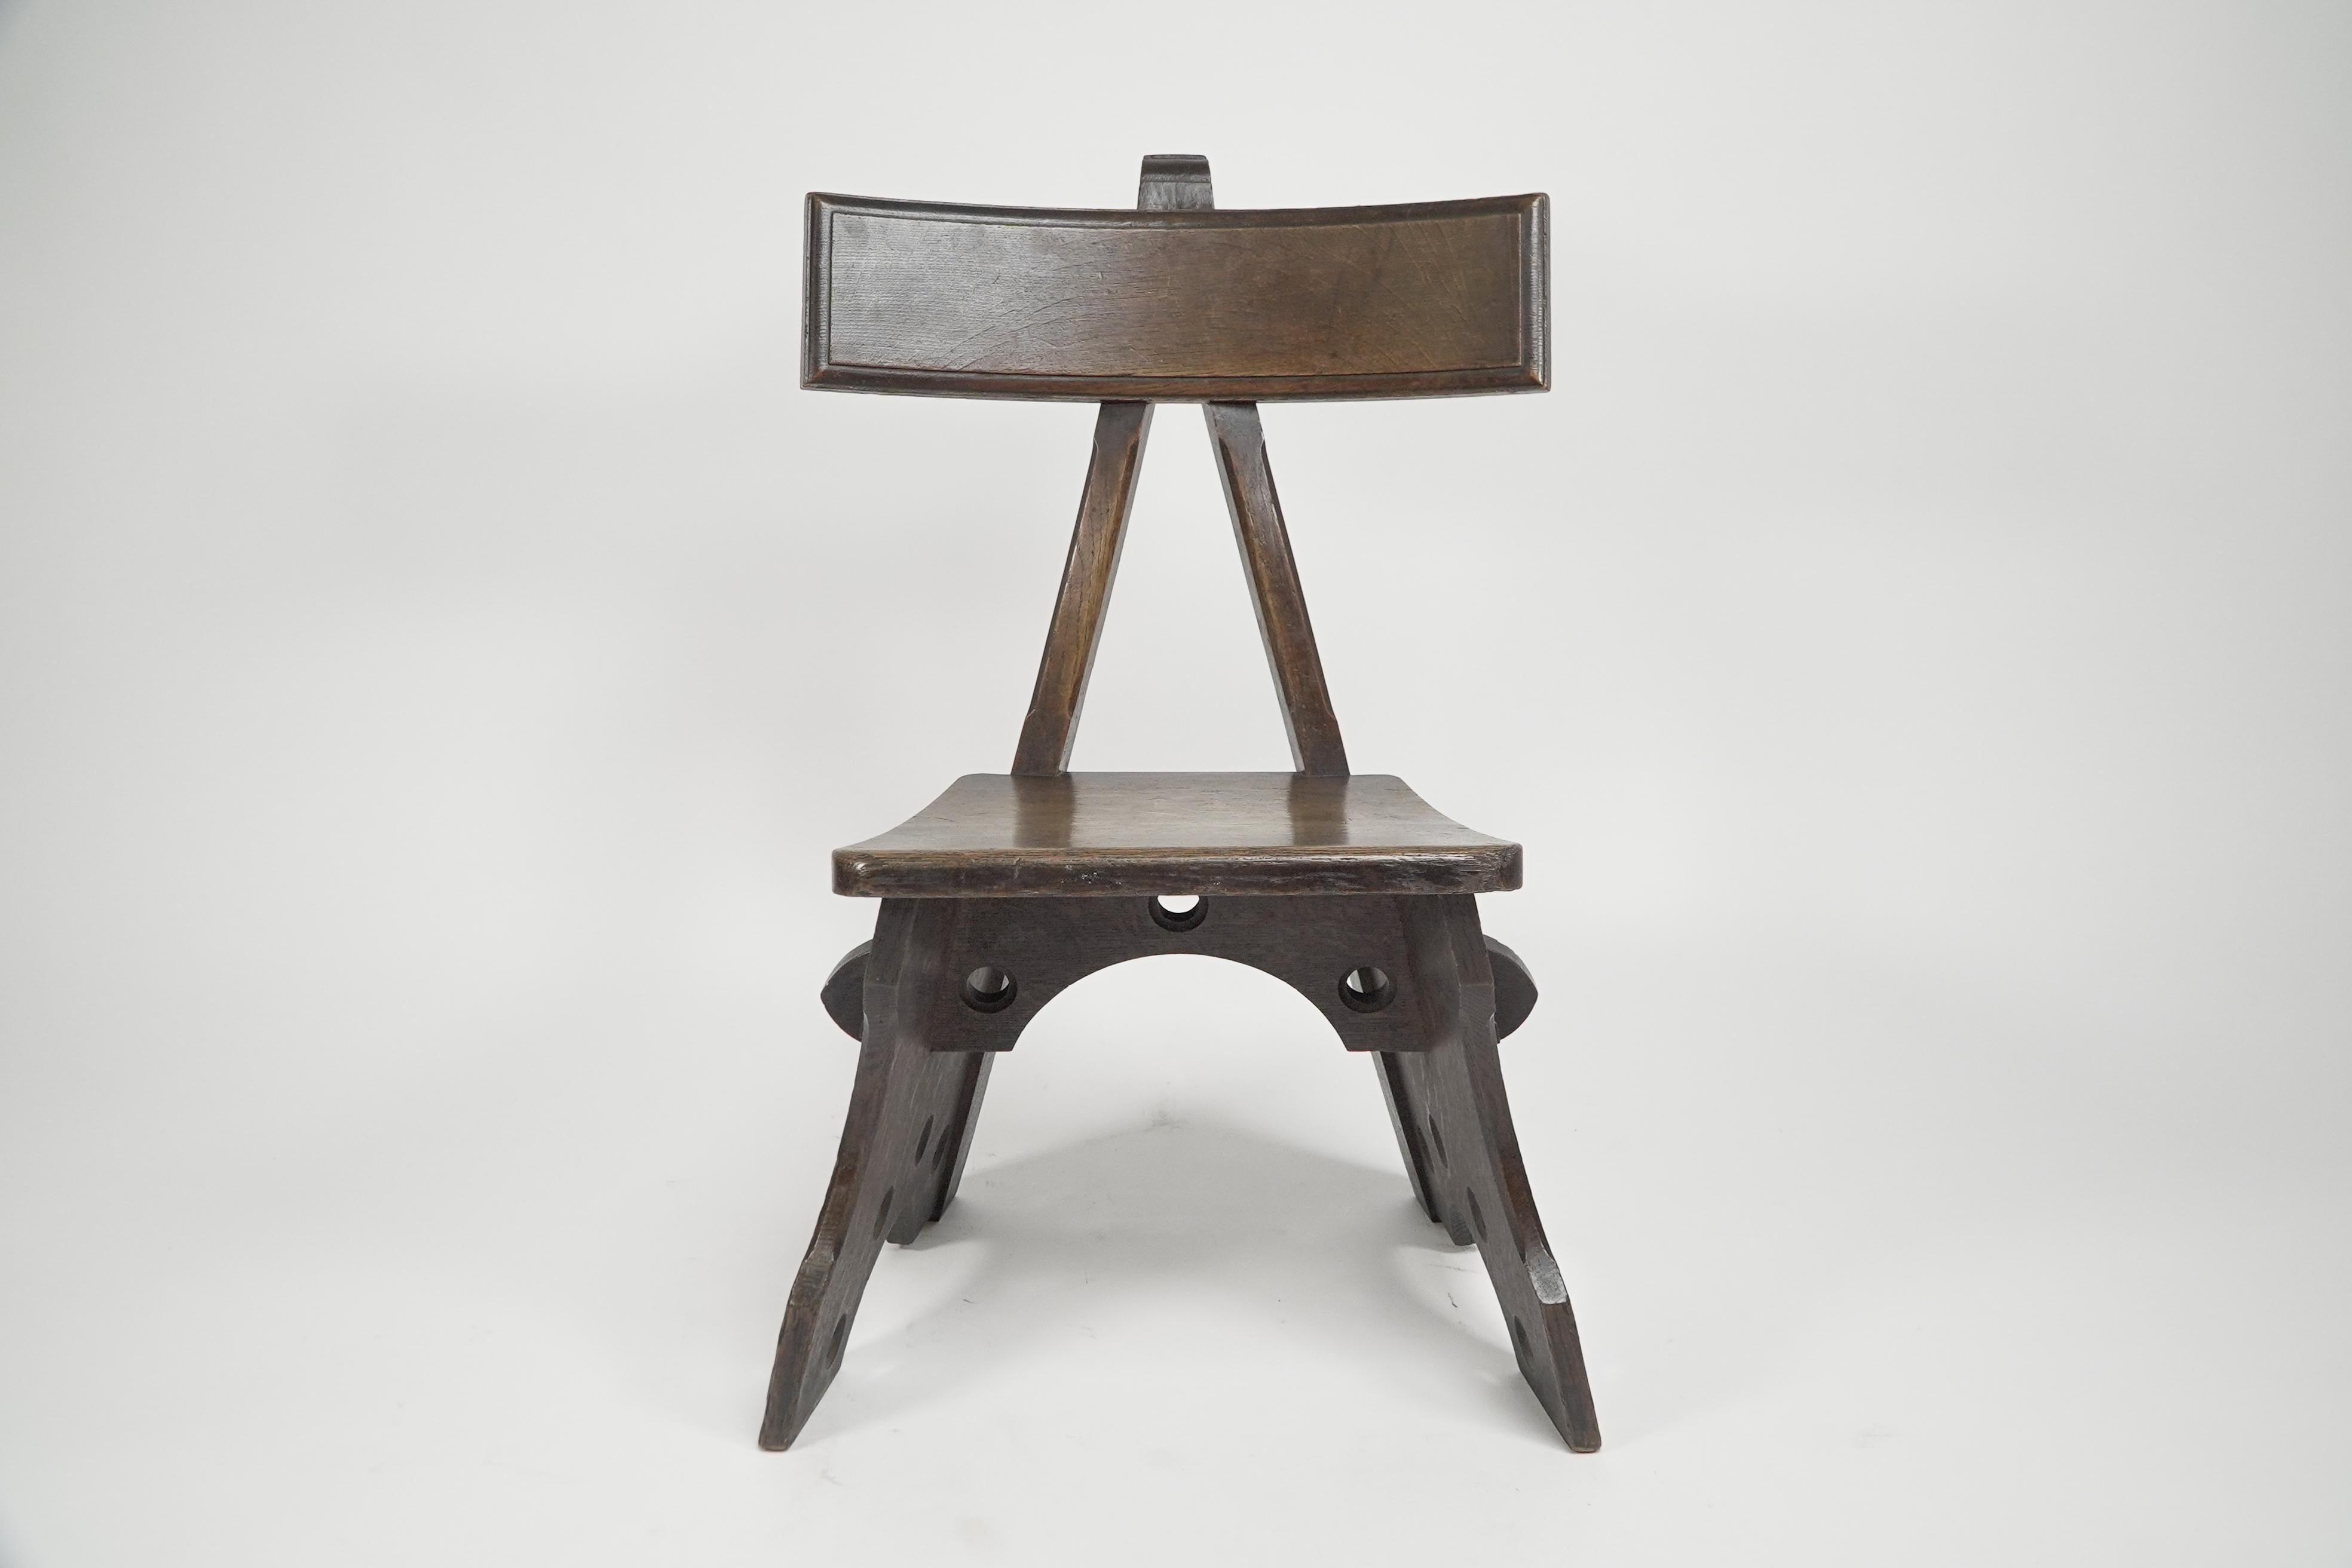 Chêne E W Pugin. Chaise en chêne de style Designer Revival conçue pour l'hôtel Granville à Ramsgate. en vente